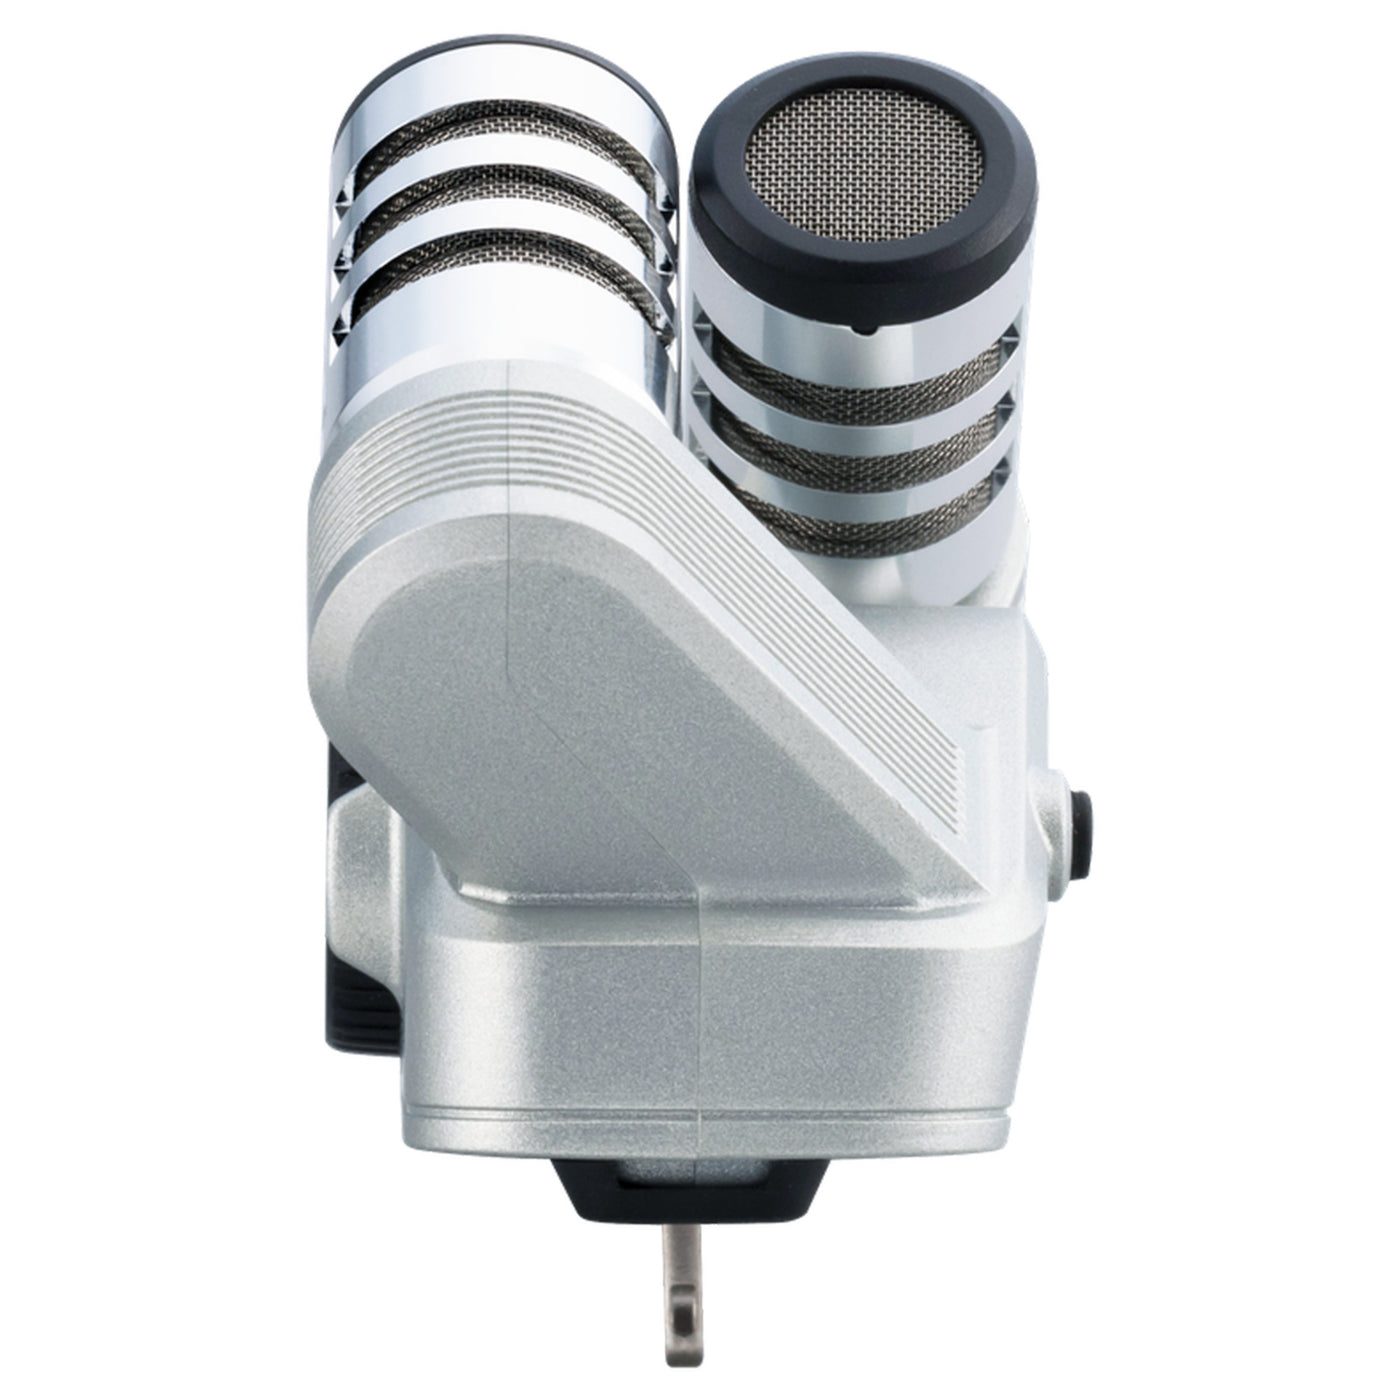 Zoom iQ6 XY Stereo Microphone